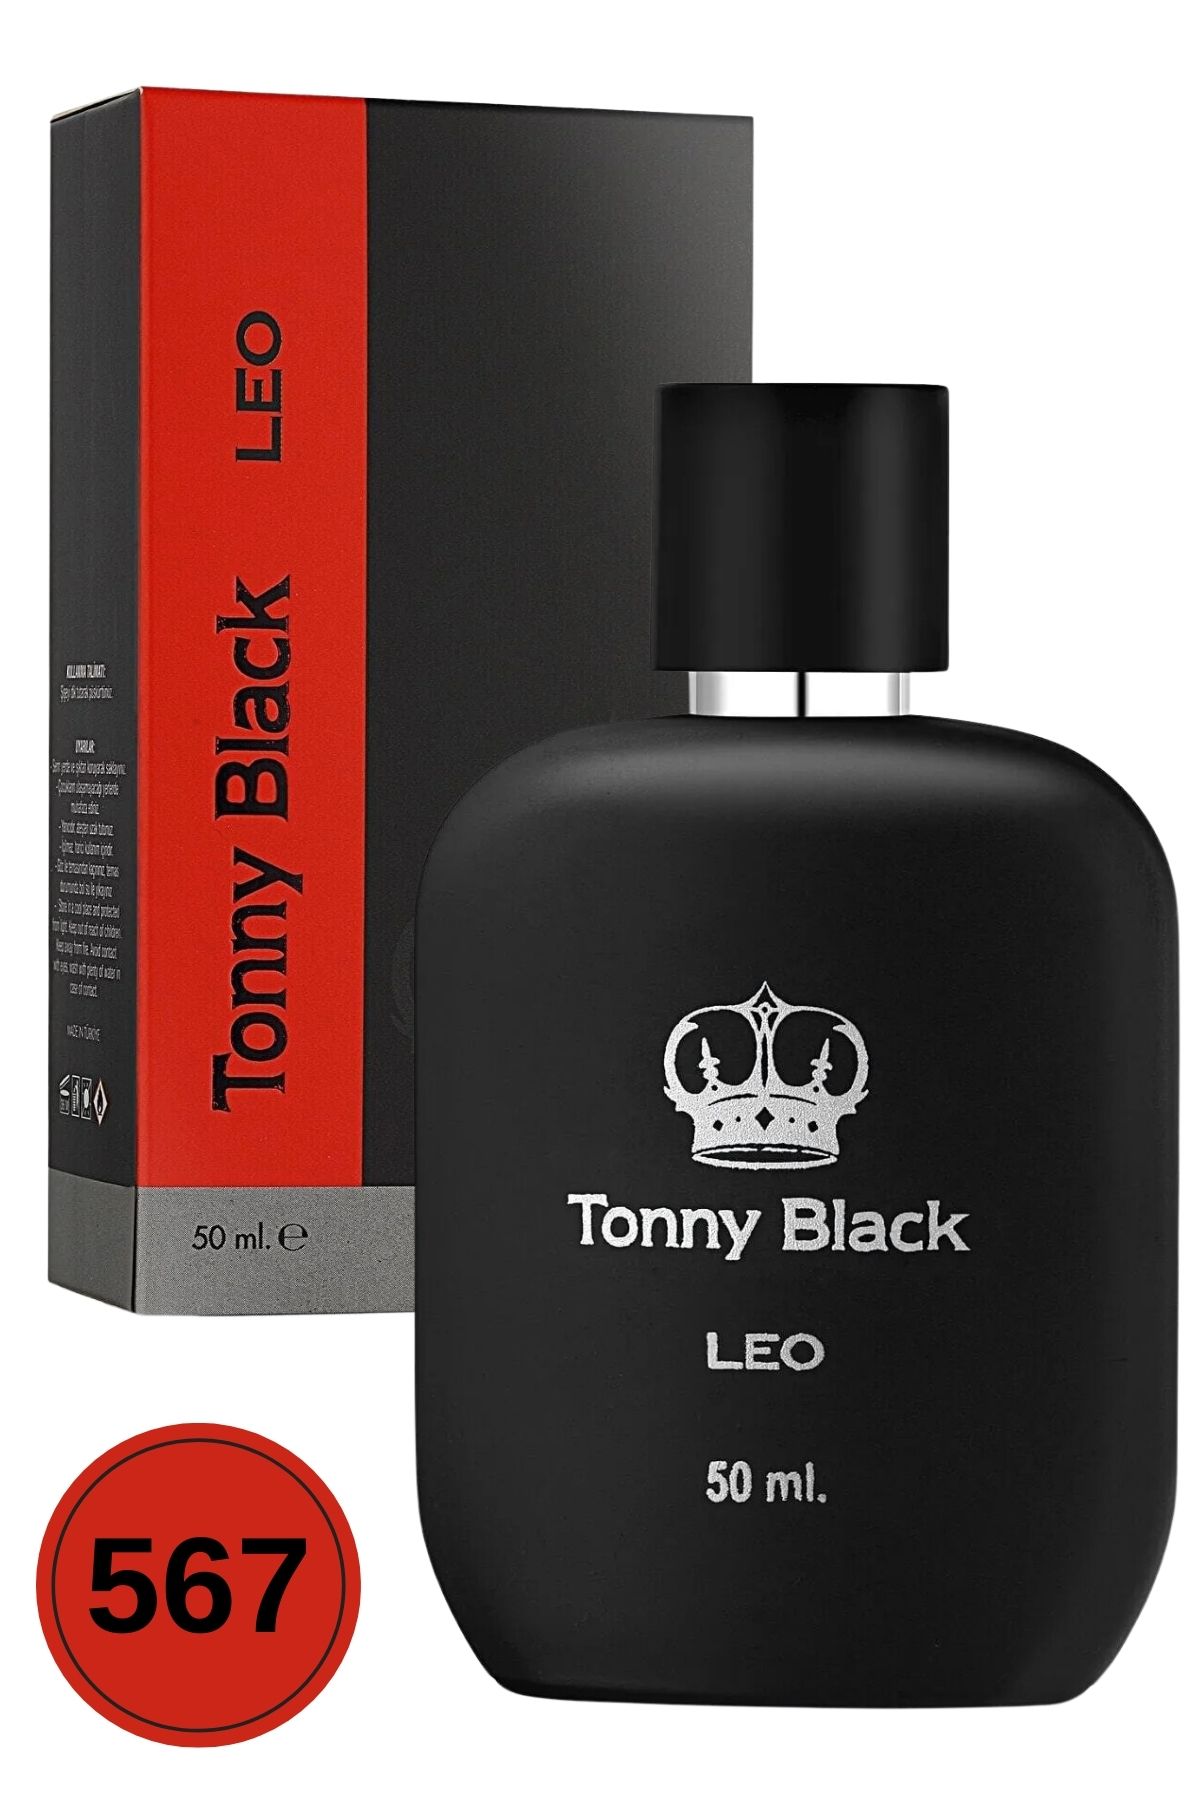 Tonny Black Erkek Özel Seri Uzun Süre Kalıcı Etkili Leo Özel Serisi Lüks Erkek Parfüm 50ml